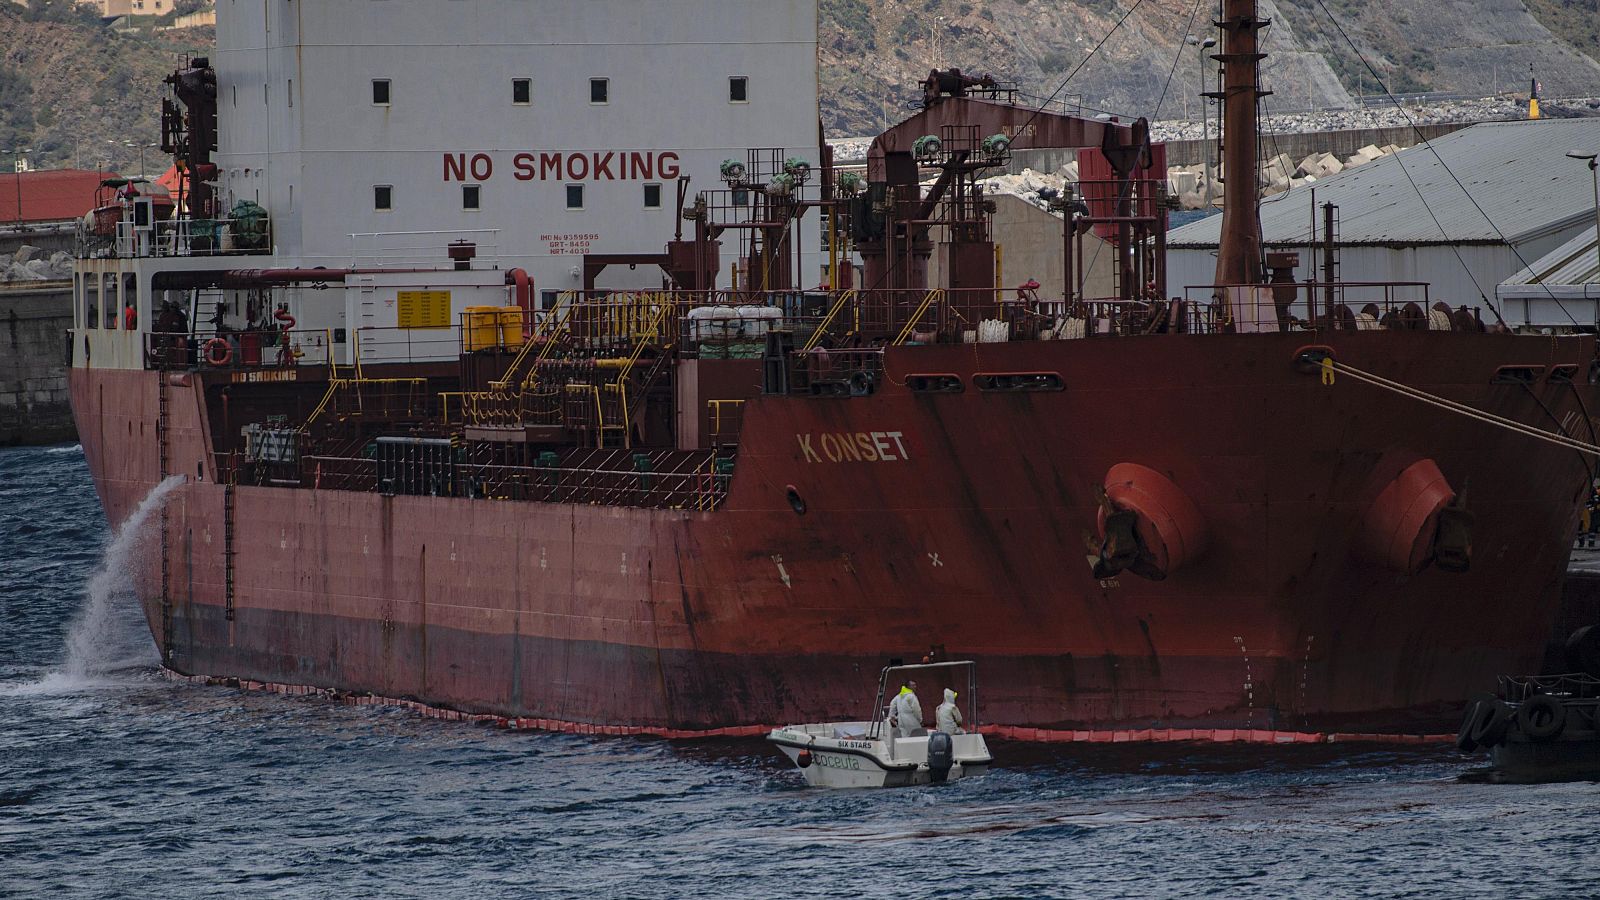 Controlado uno de los vertidos "más graves" de Ceuta: el petrolero turco "K Onset" vertió 25.000 litros de fuel